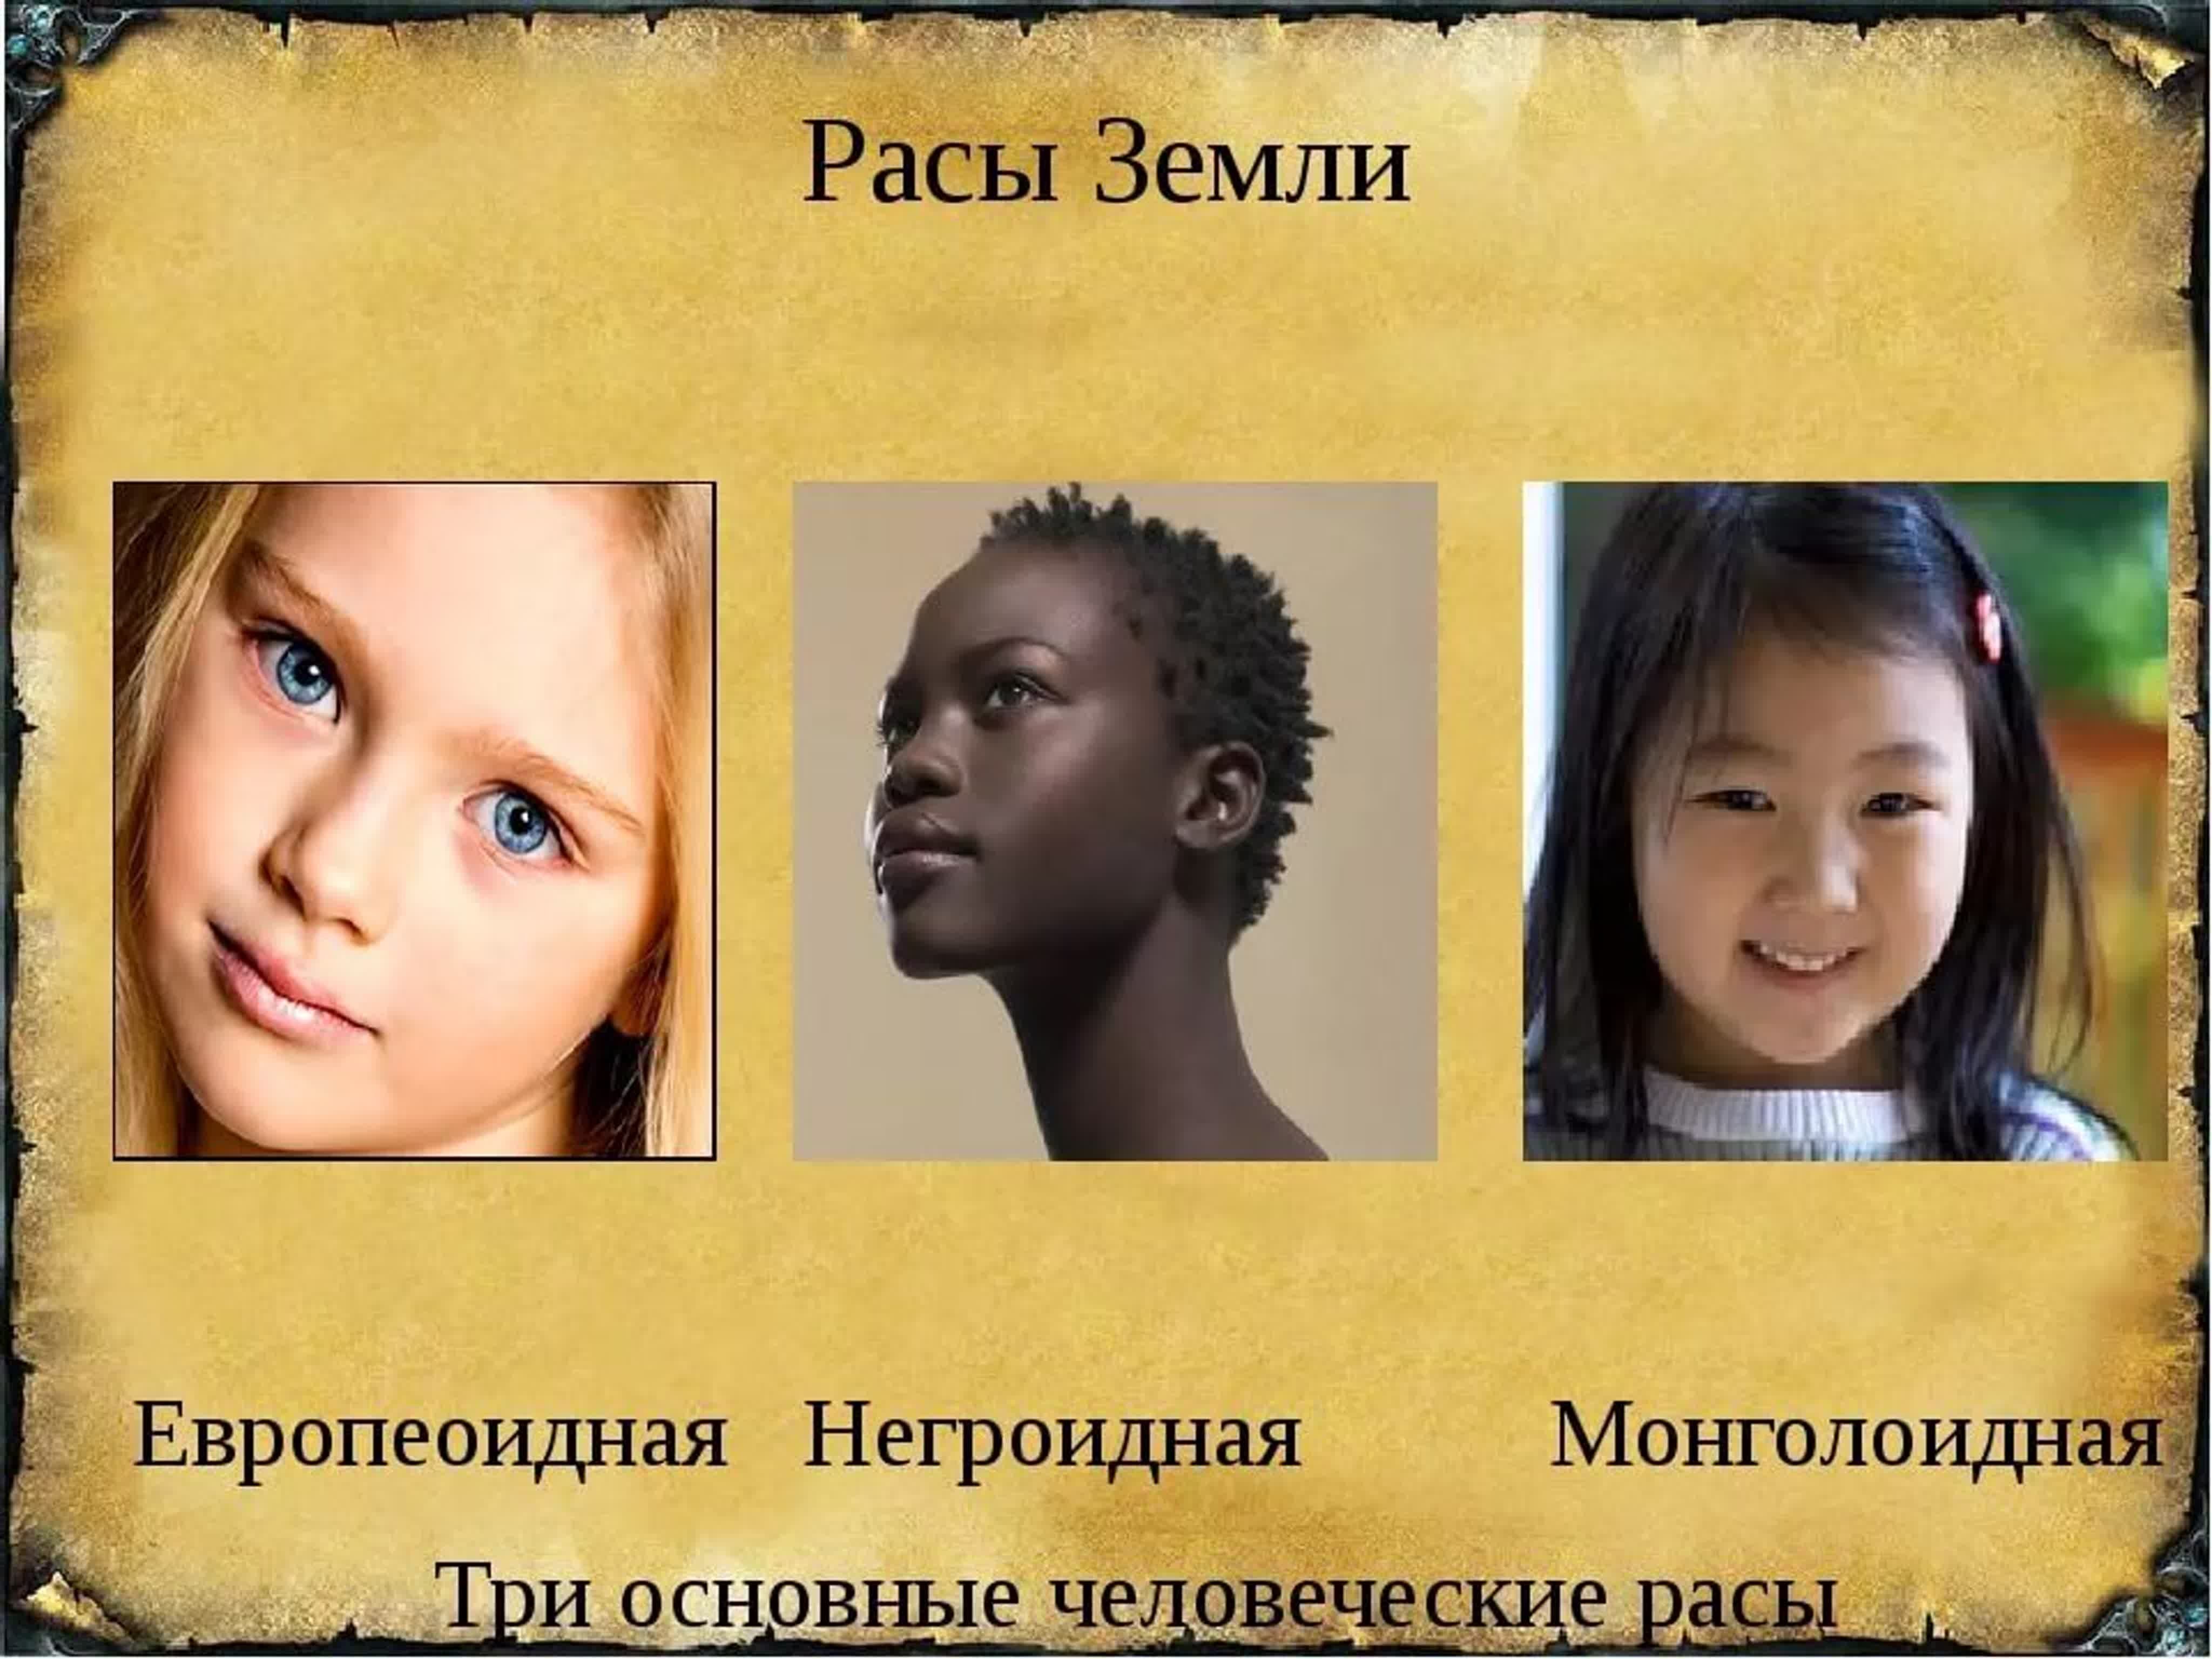 Земли человеческие расы. Три расы монголоидная, негроидная, европейская. Человеческие расы. Представители разных рас. Расы людей на земле.